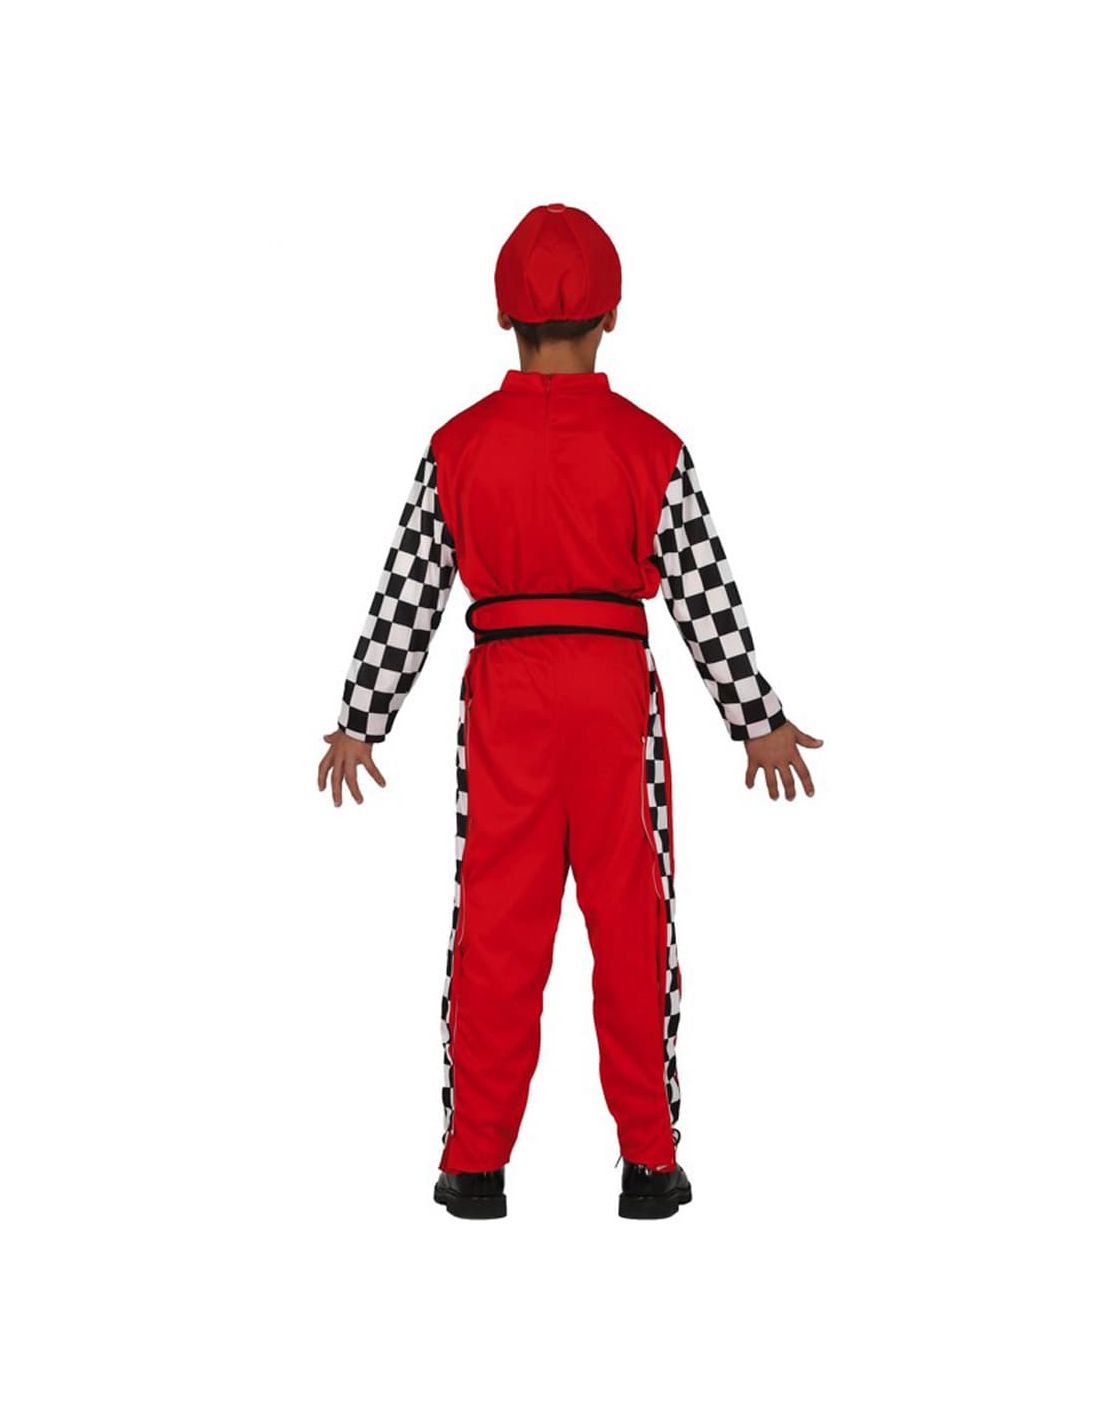 Disfraz de Piloto de Fórmula 1 Infantil